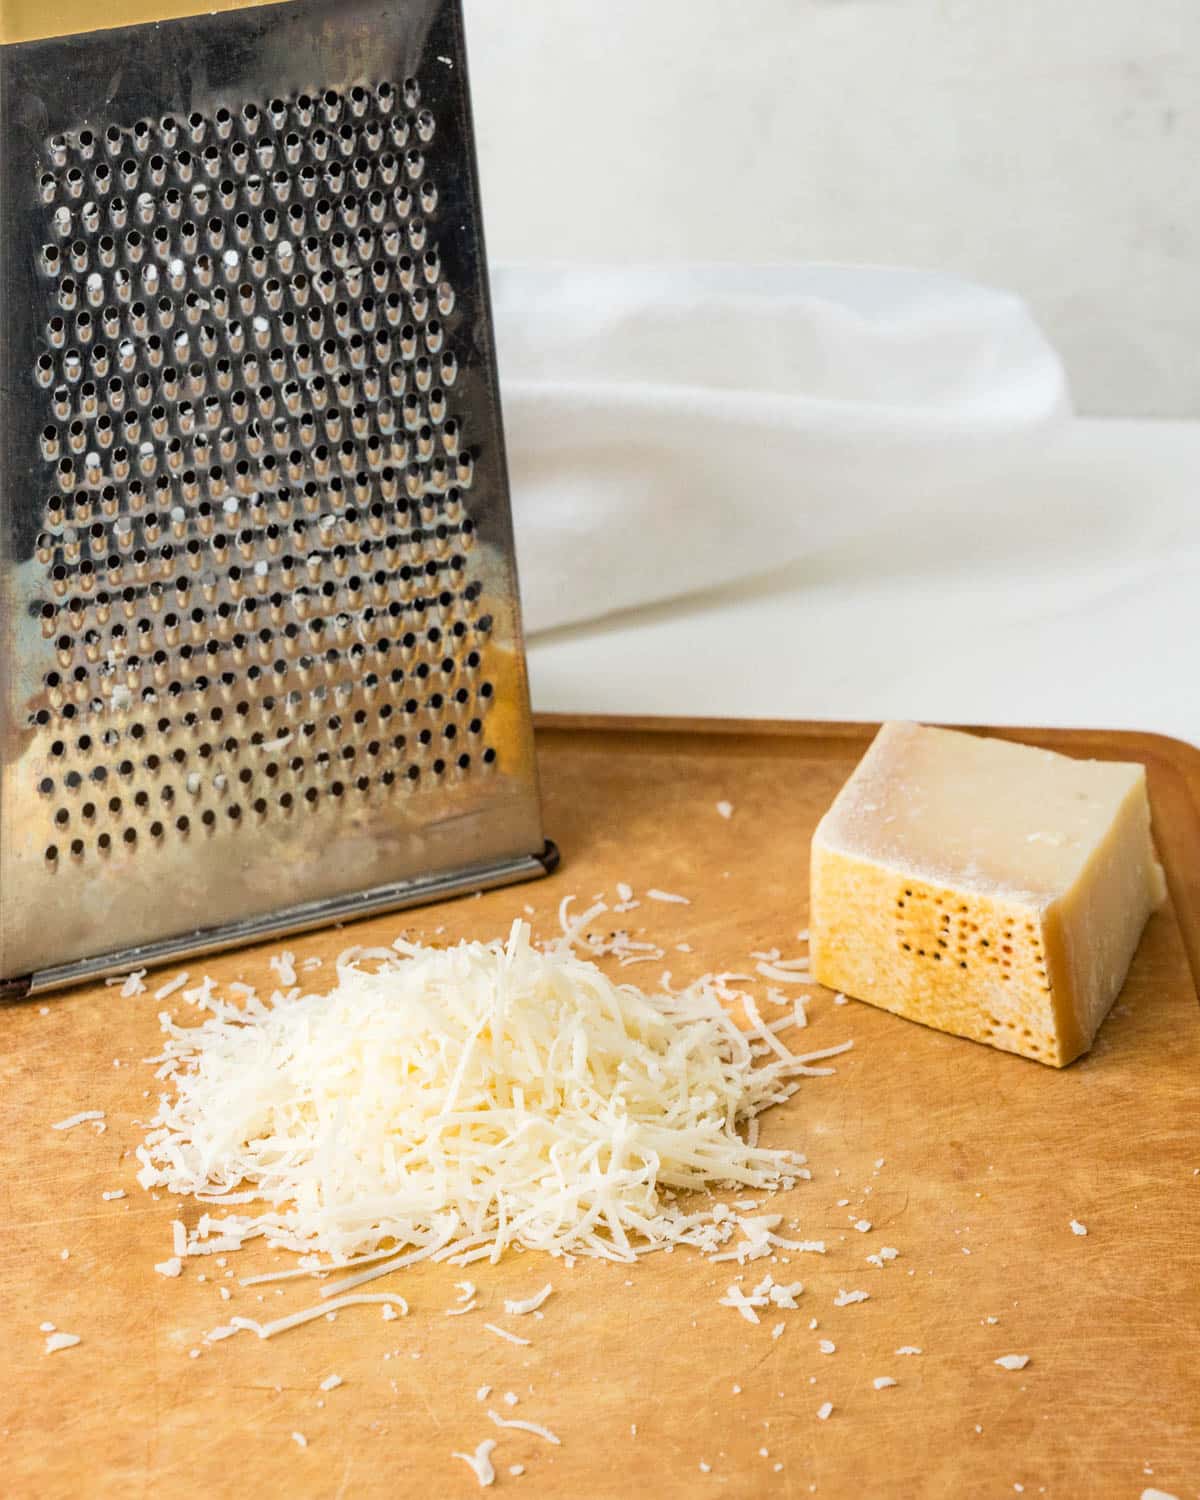 Grating parmesan cheese. 